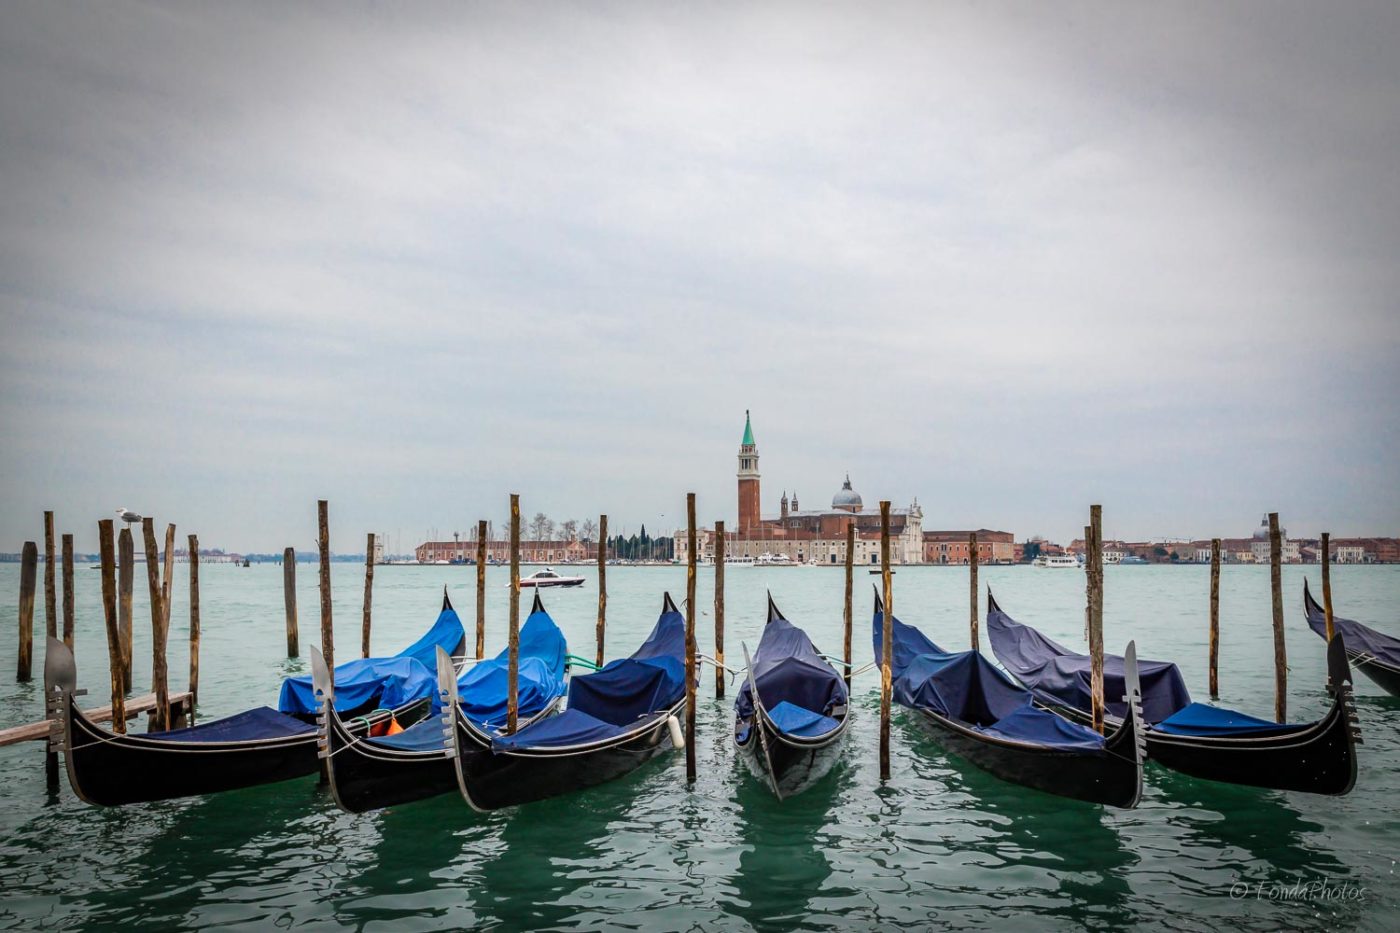 Gondolas in the Giudecca Canal, Venice